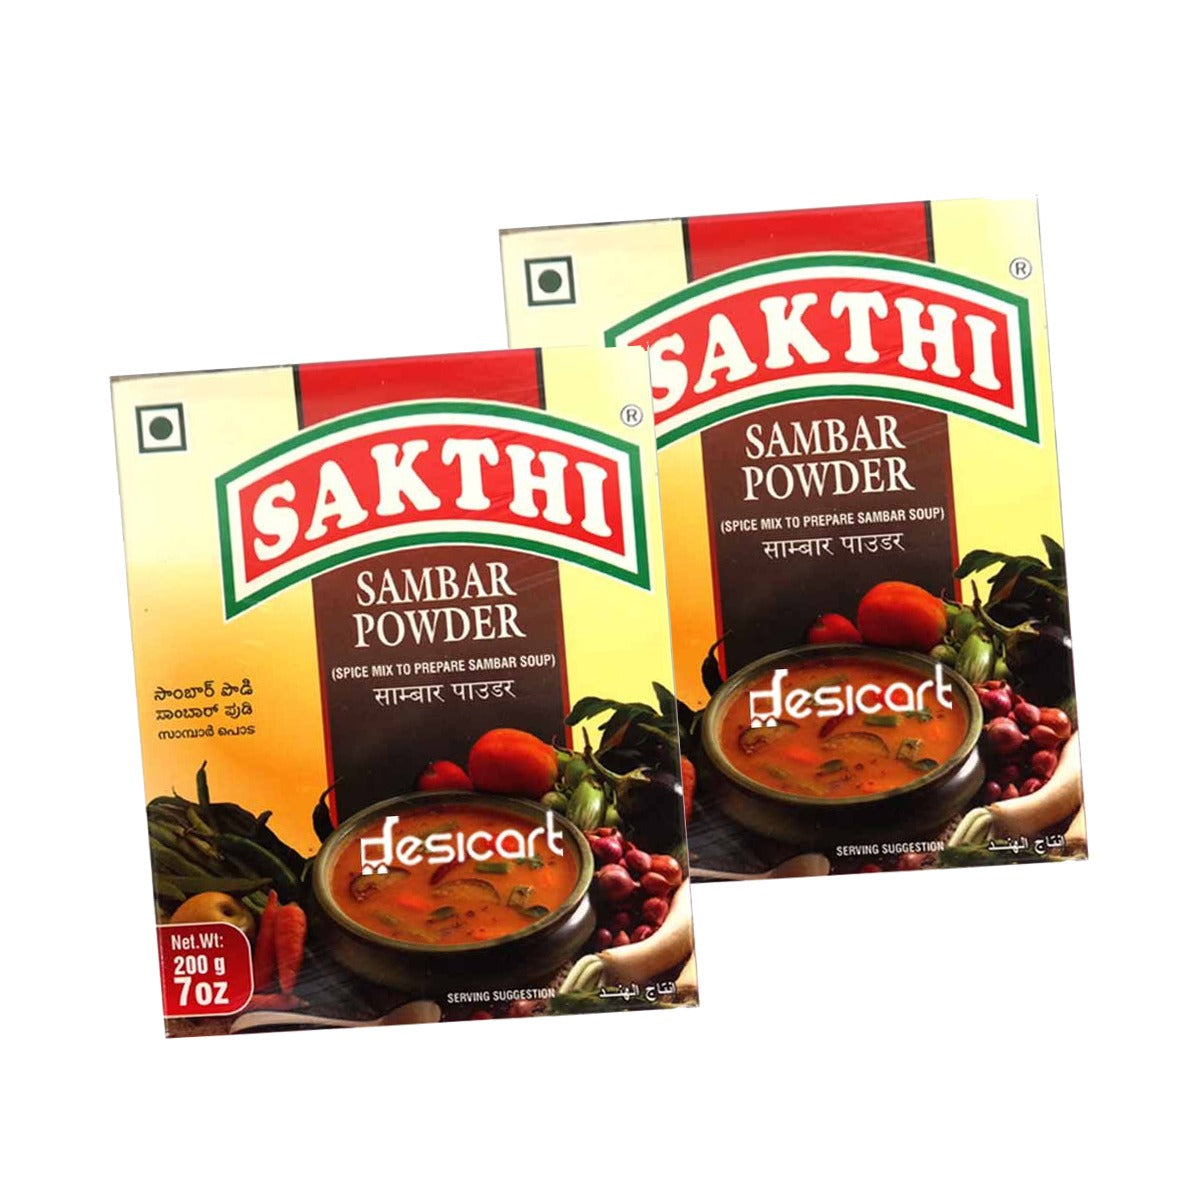 Sakthi Sambar Powder 200g Pack of 2